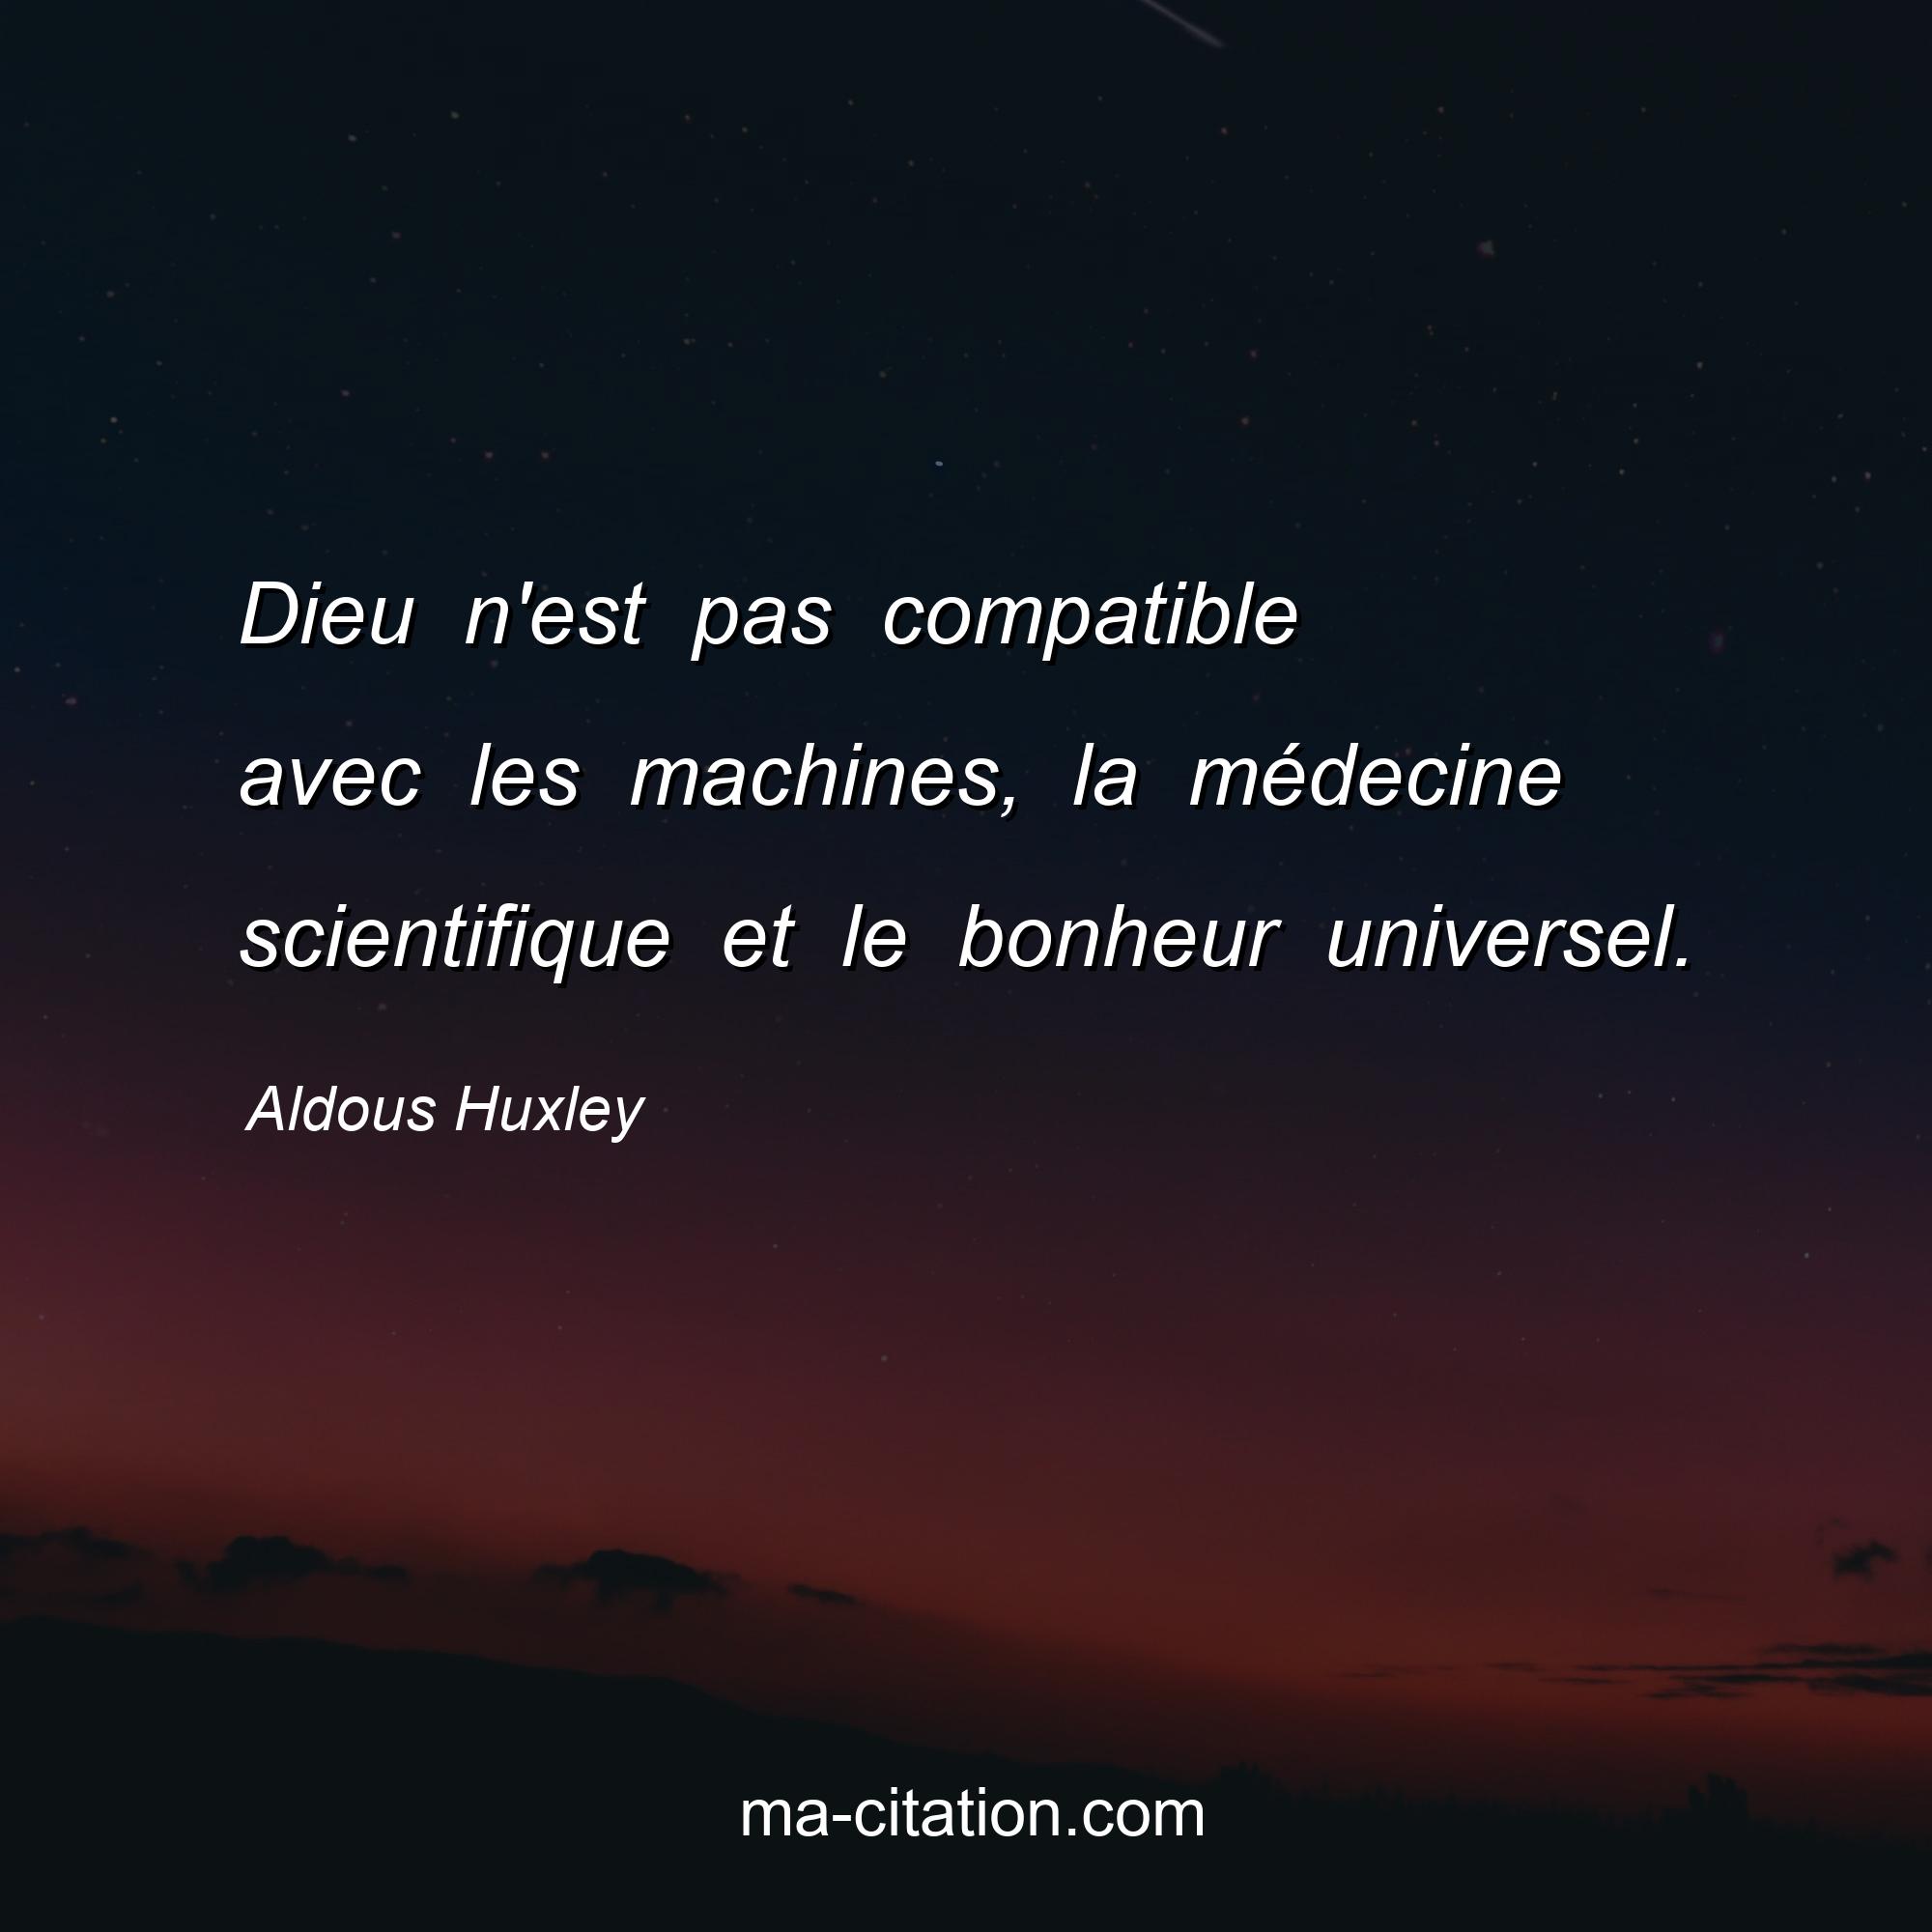 Aldous Huxley : Dieu n'est pas compatible avec les machines, la médecine scientifique et le bonheur universel.